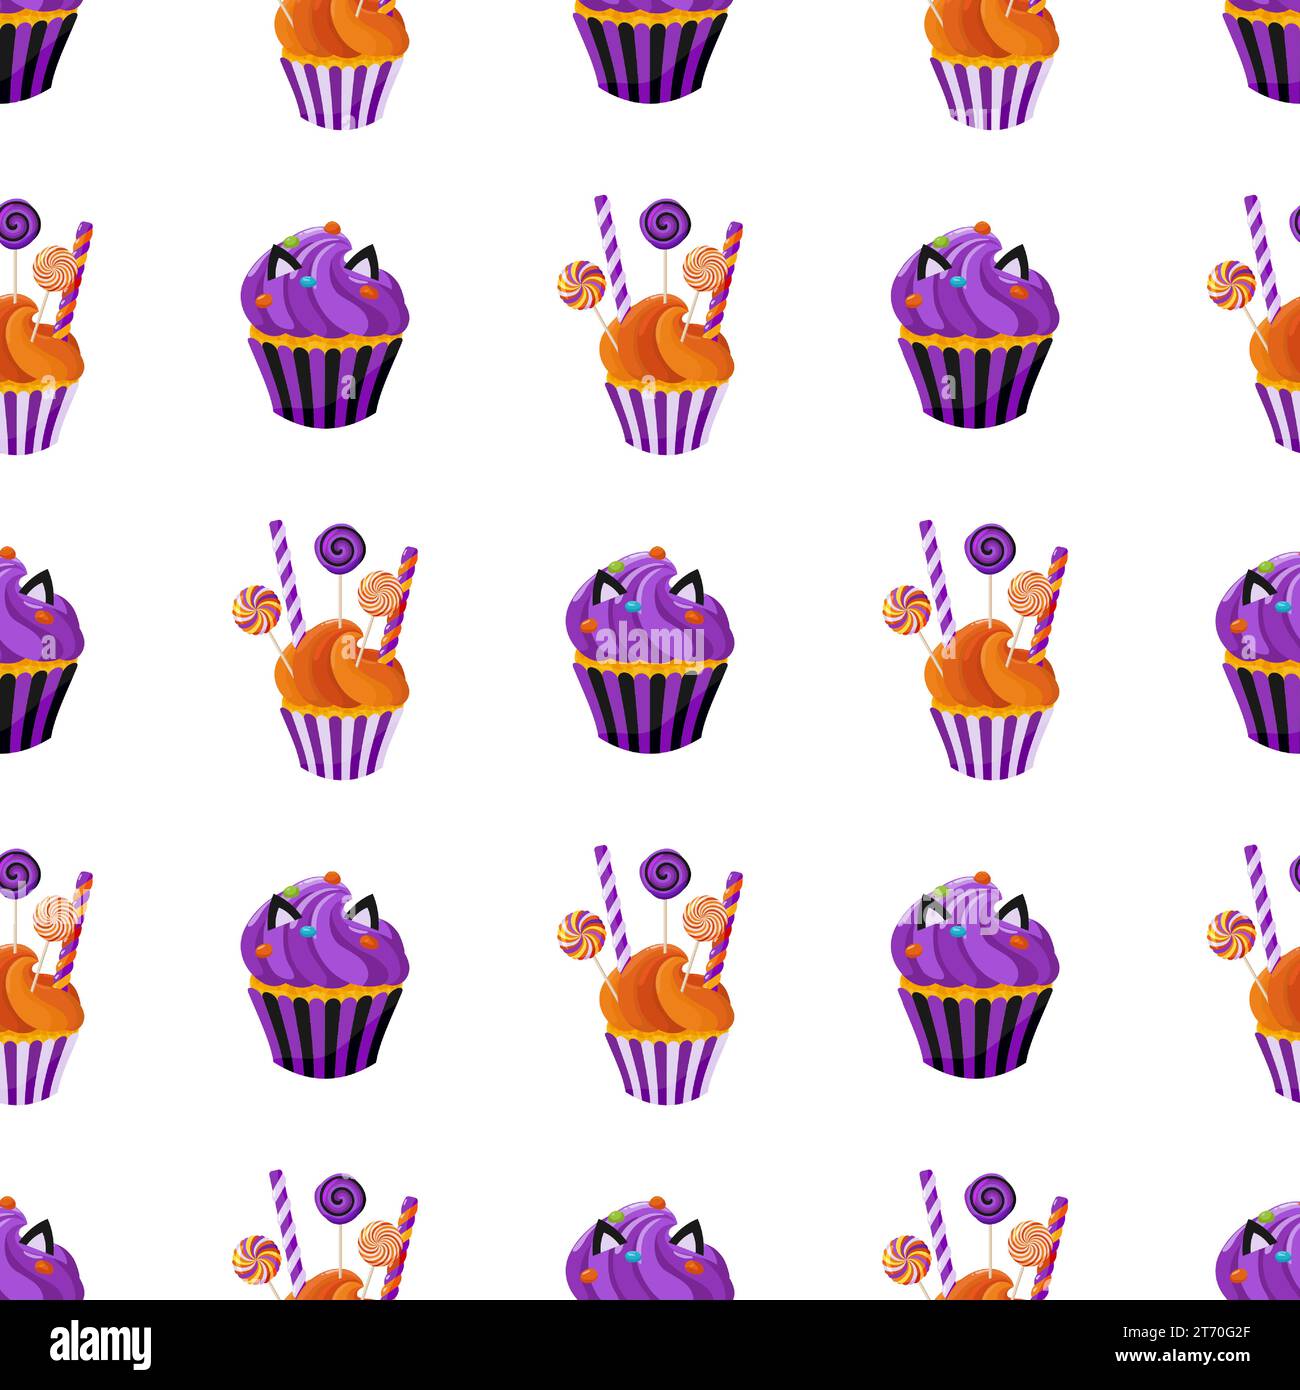 Hintergrund der süßen Leckereien, einschließlich Süßigkeiten, Süßwaren und Cremesucksäcke. Nahtloses Muster mit Cupcakes. Zum Einpacken von Papier, Verpackung, Stoff Stock Vektor